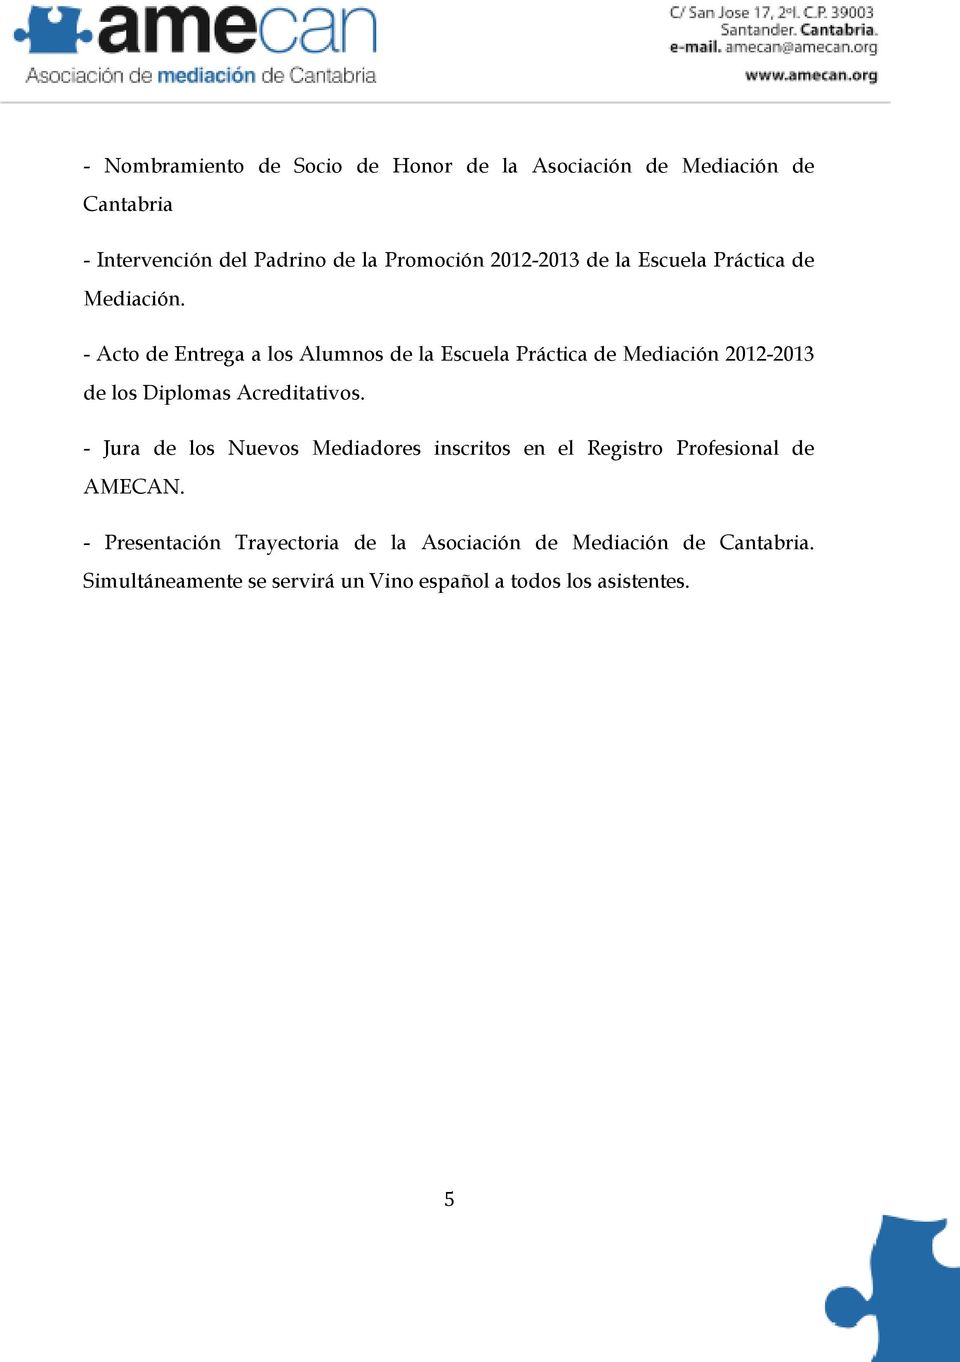 - Acto de Entrega a los Alumnos de la Escuela Práctica de Mediación 2012-2013 de los Diplomas Acreditativos.